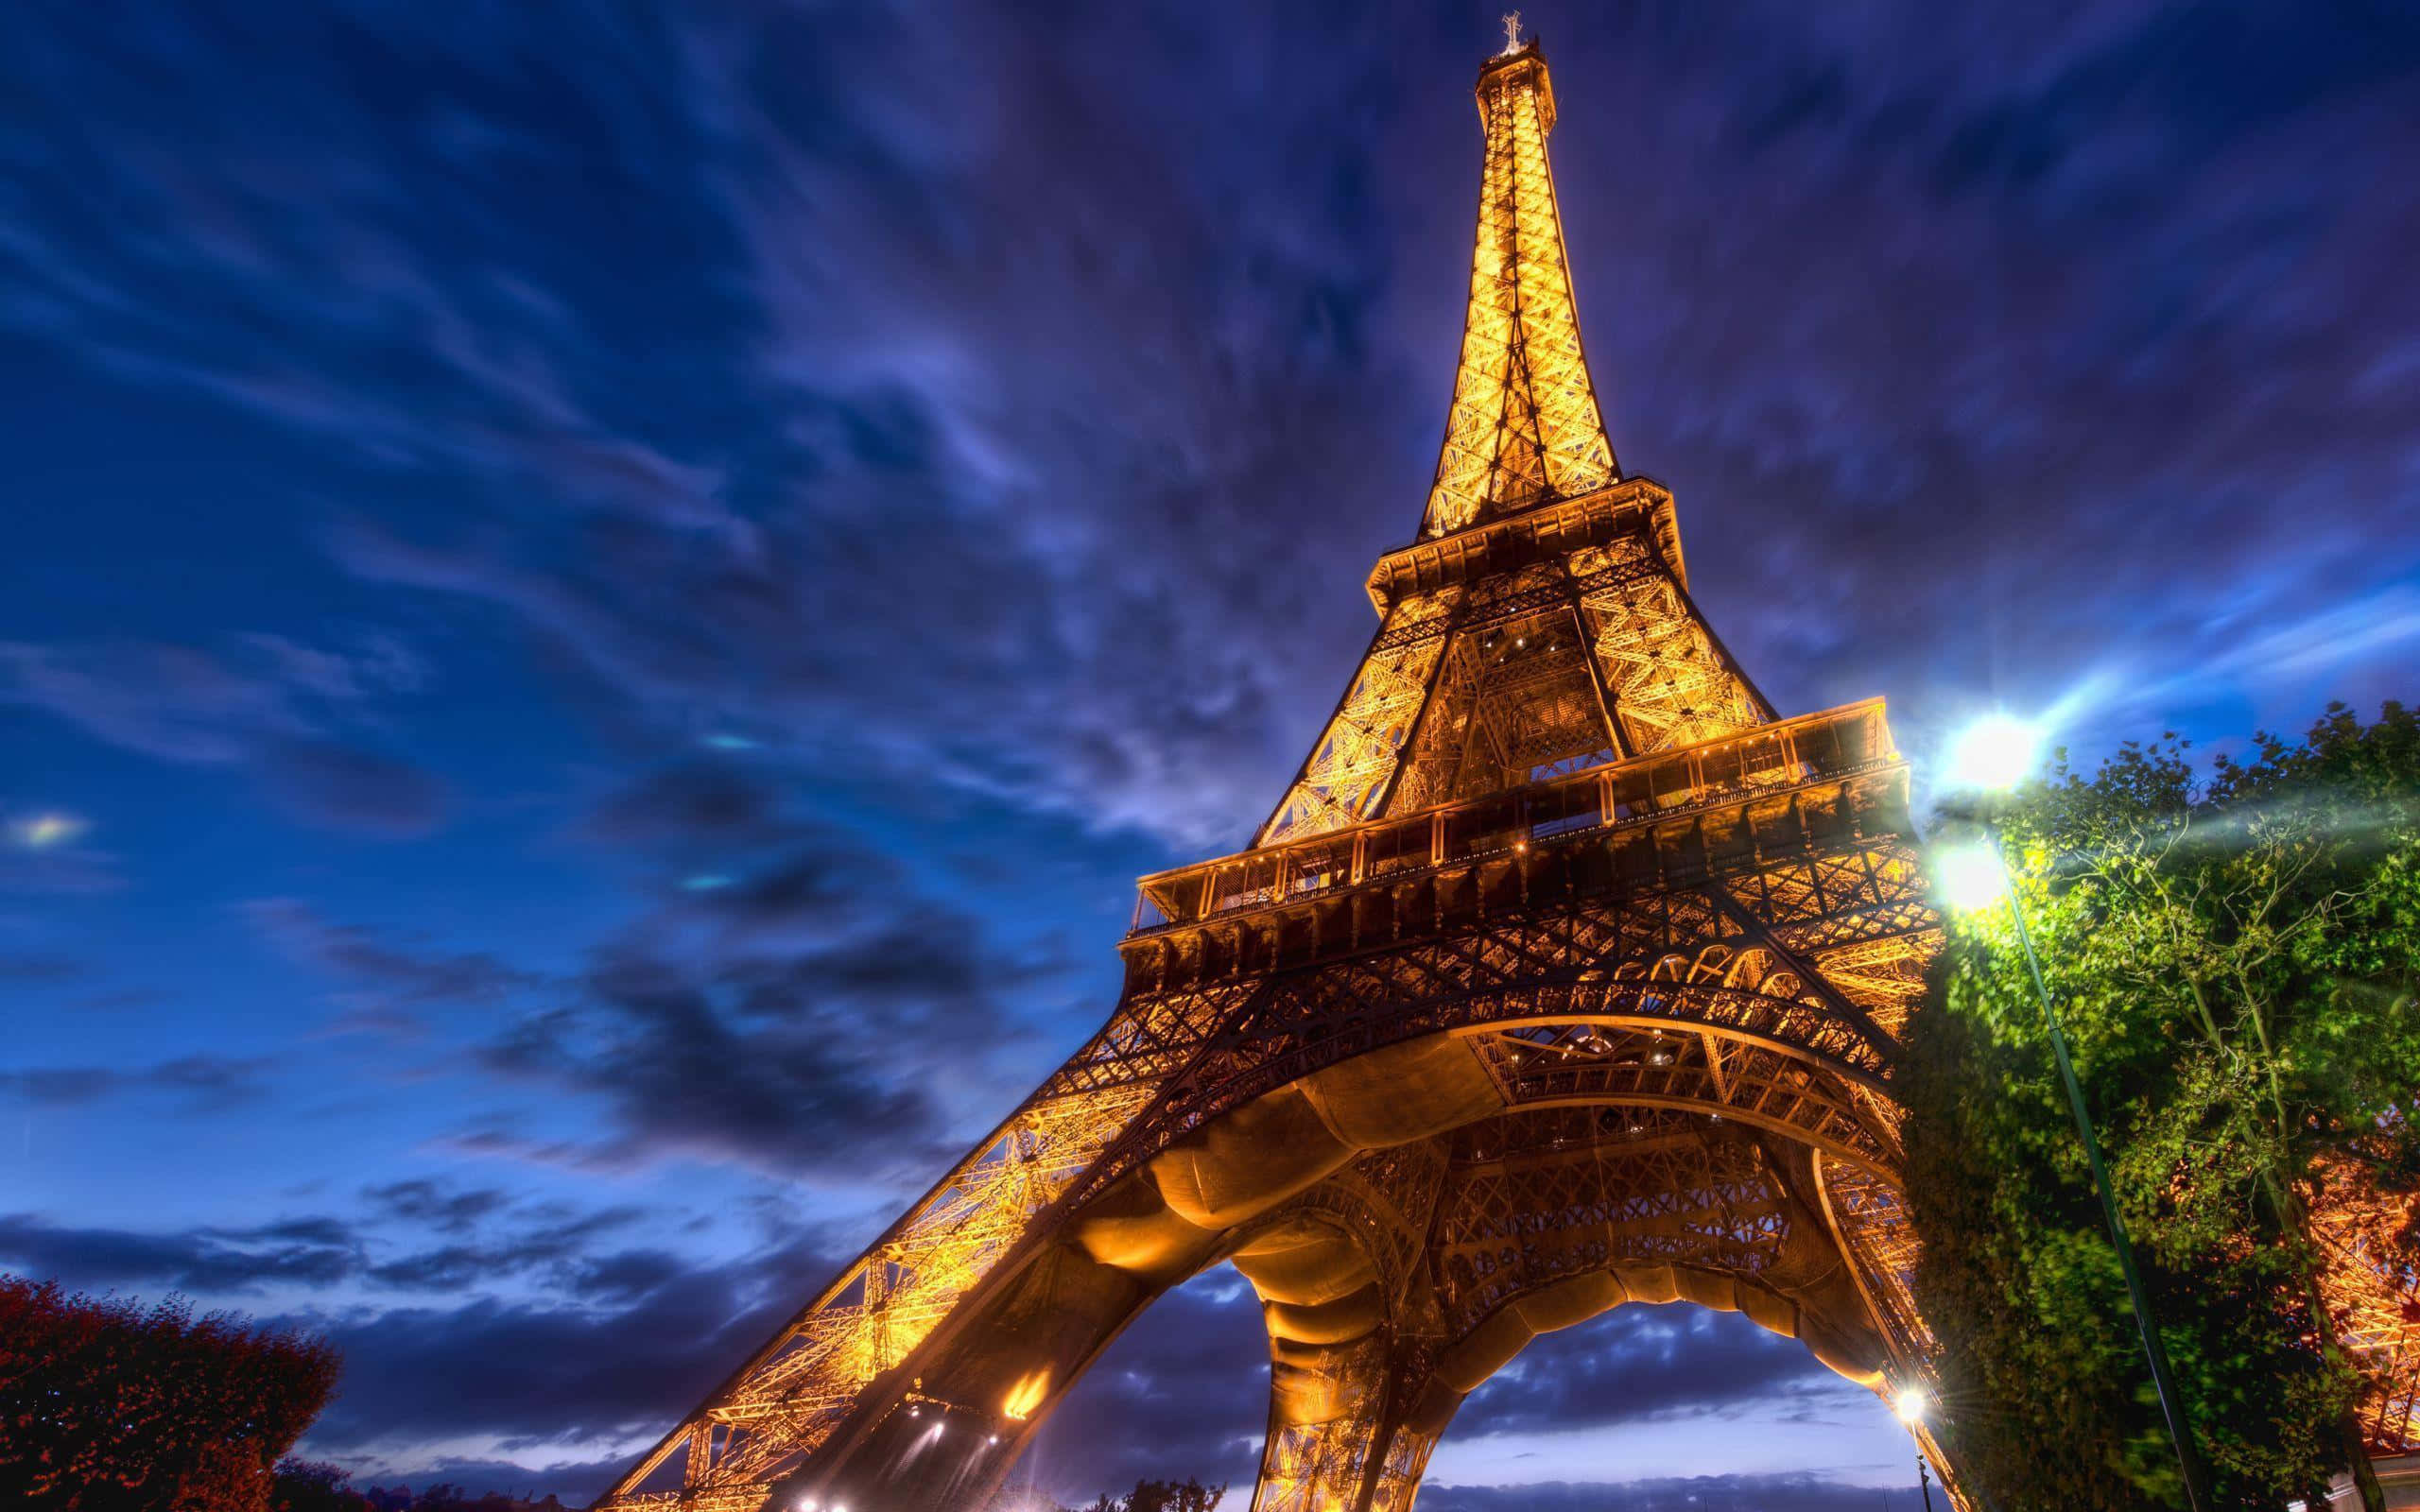 Viajaa La Torre Eiffel En París